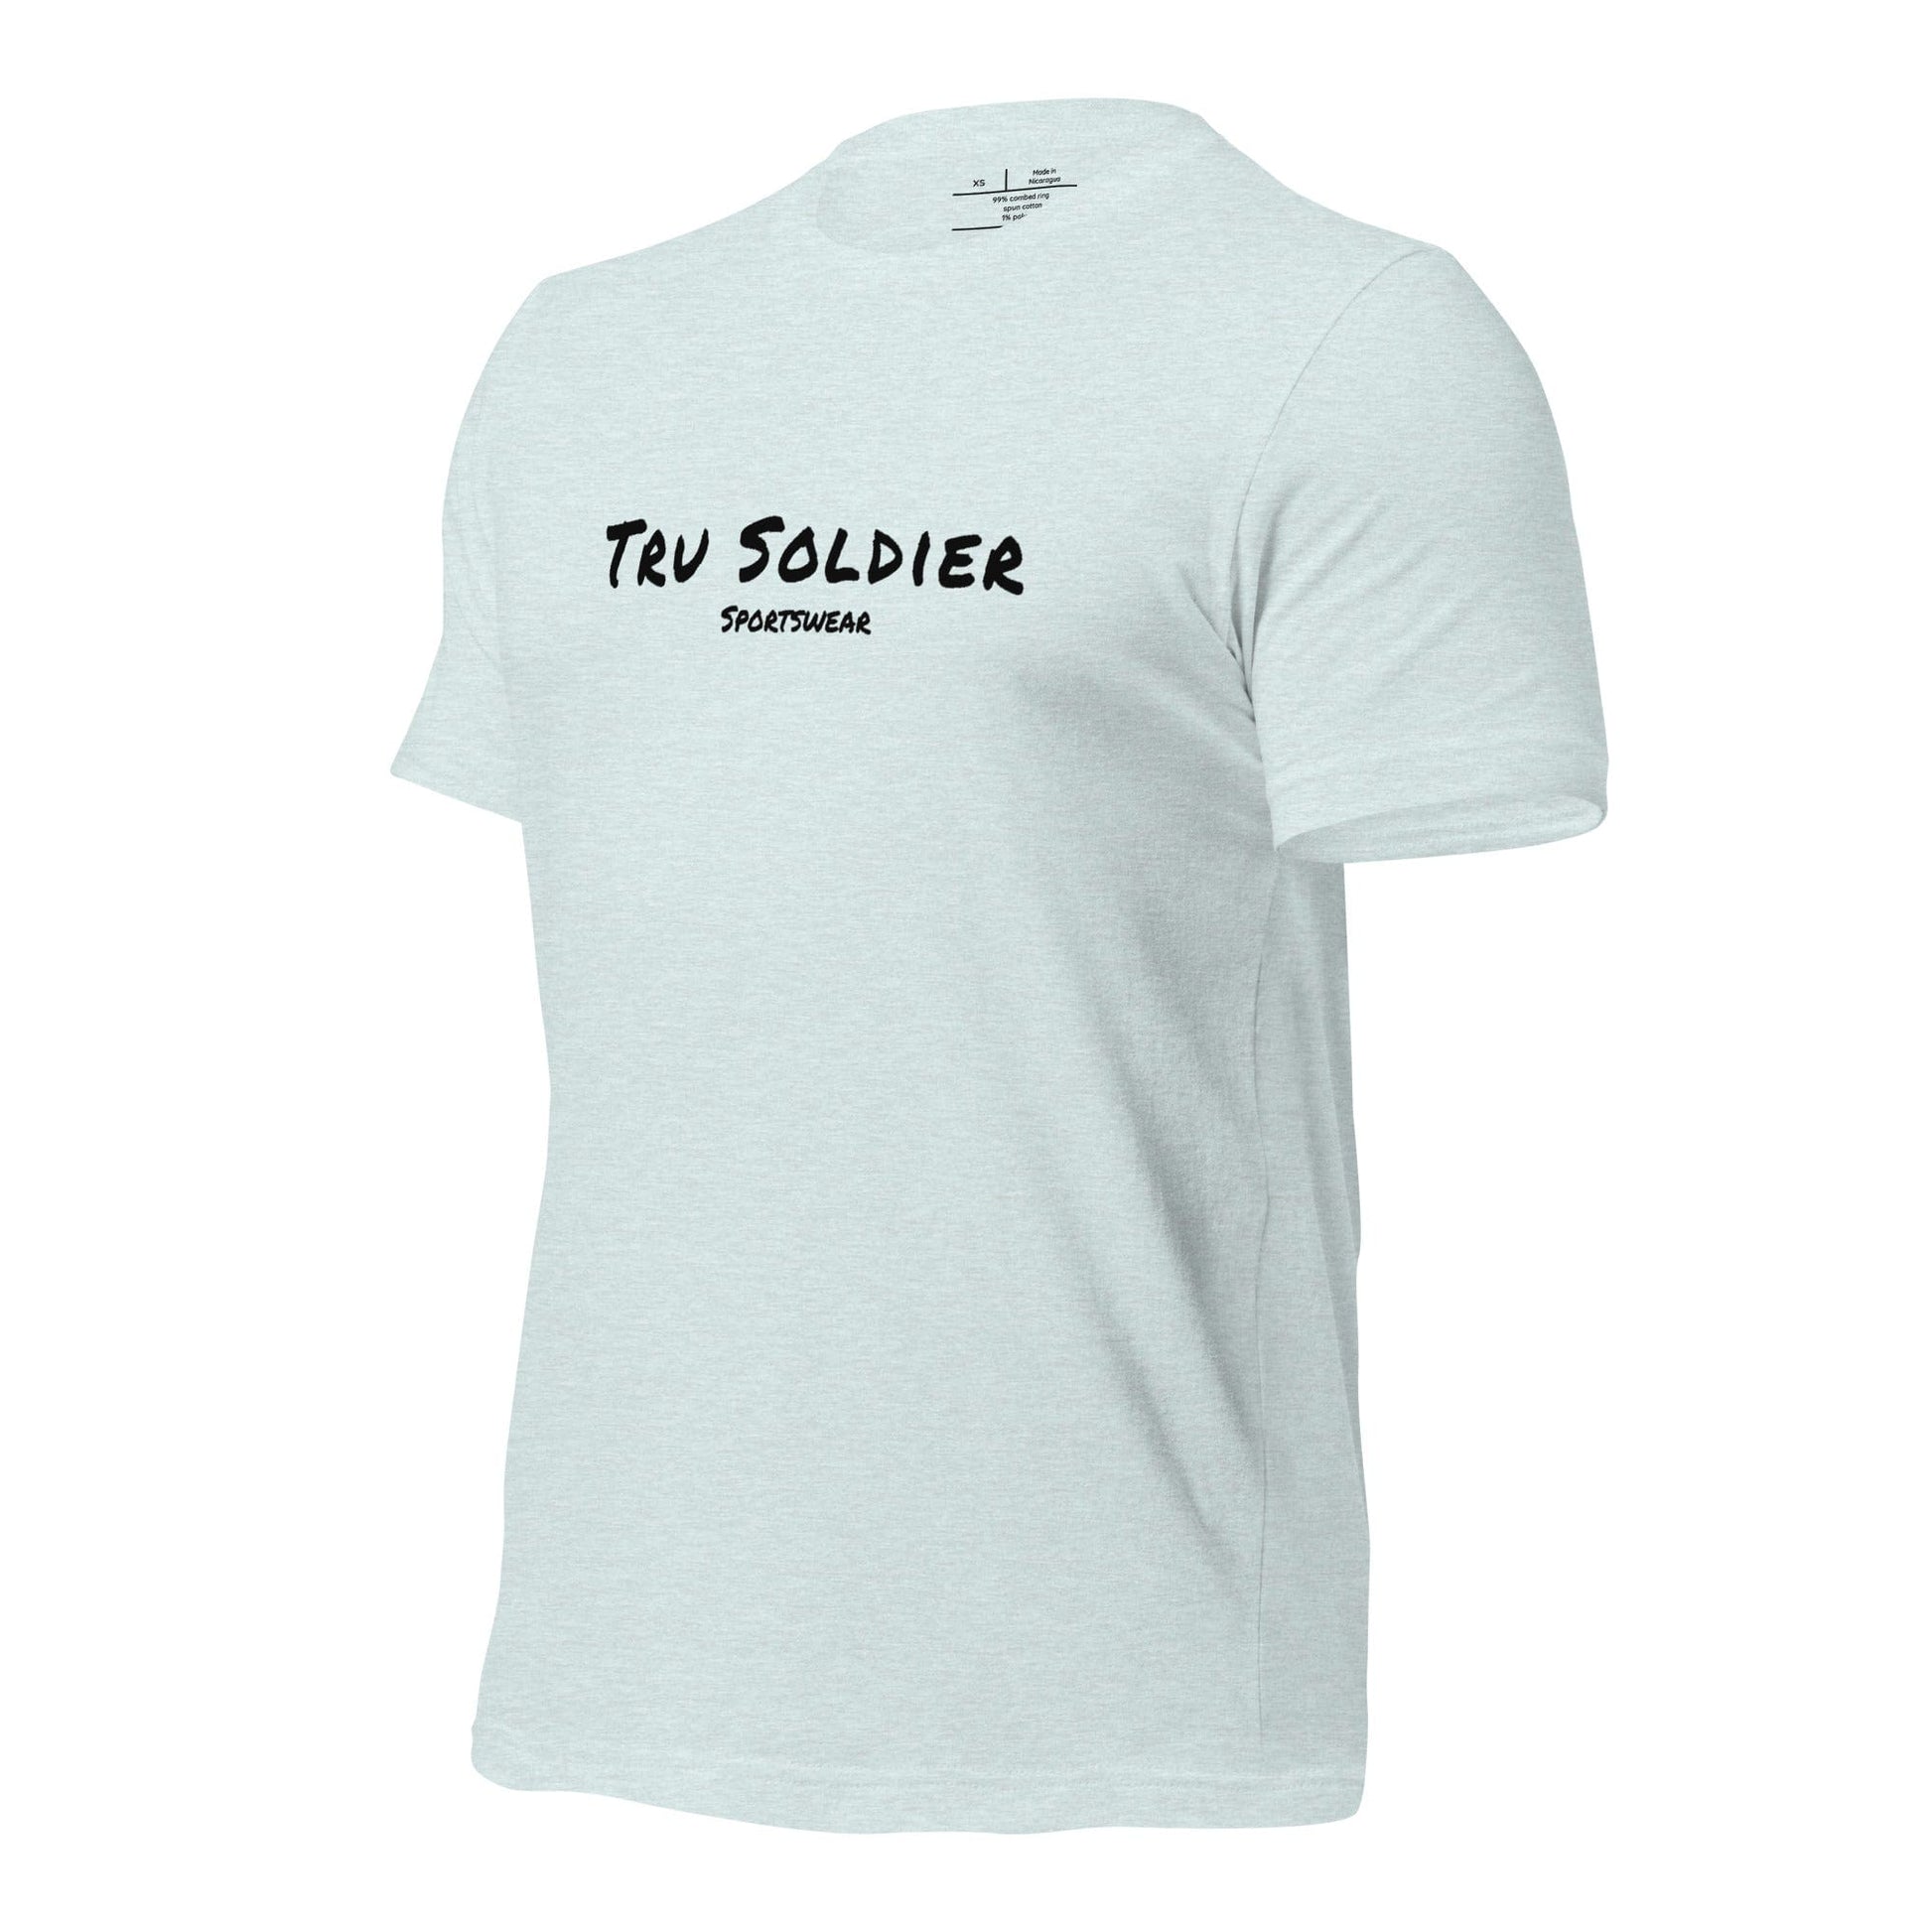 Tru Soldier Sportswear  Unisex t-shirt